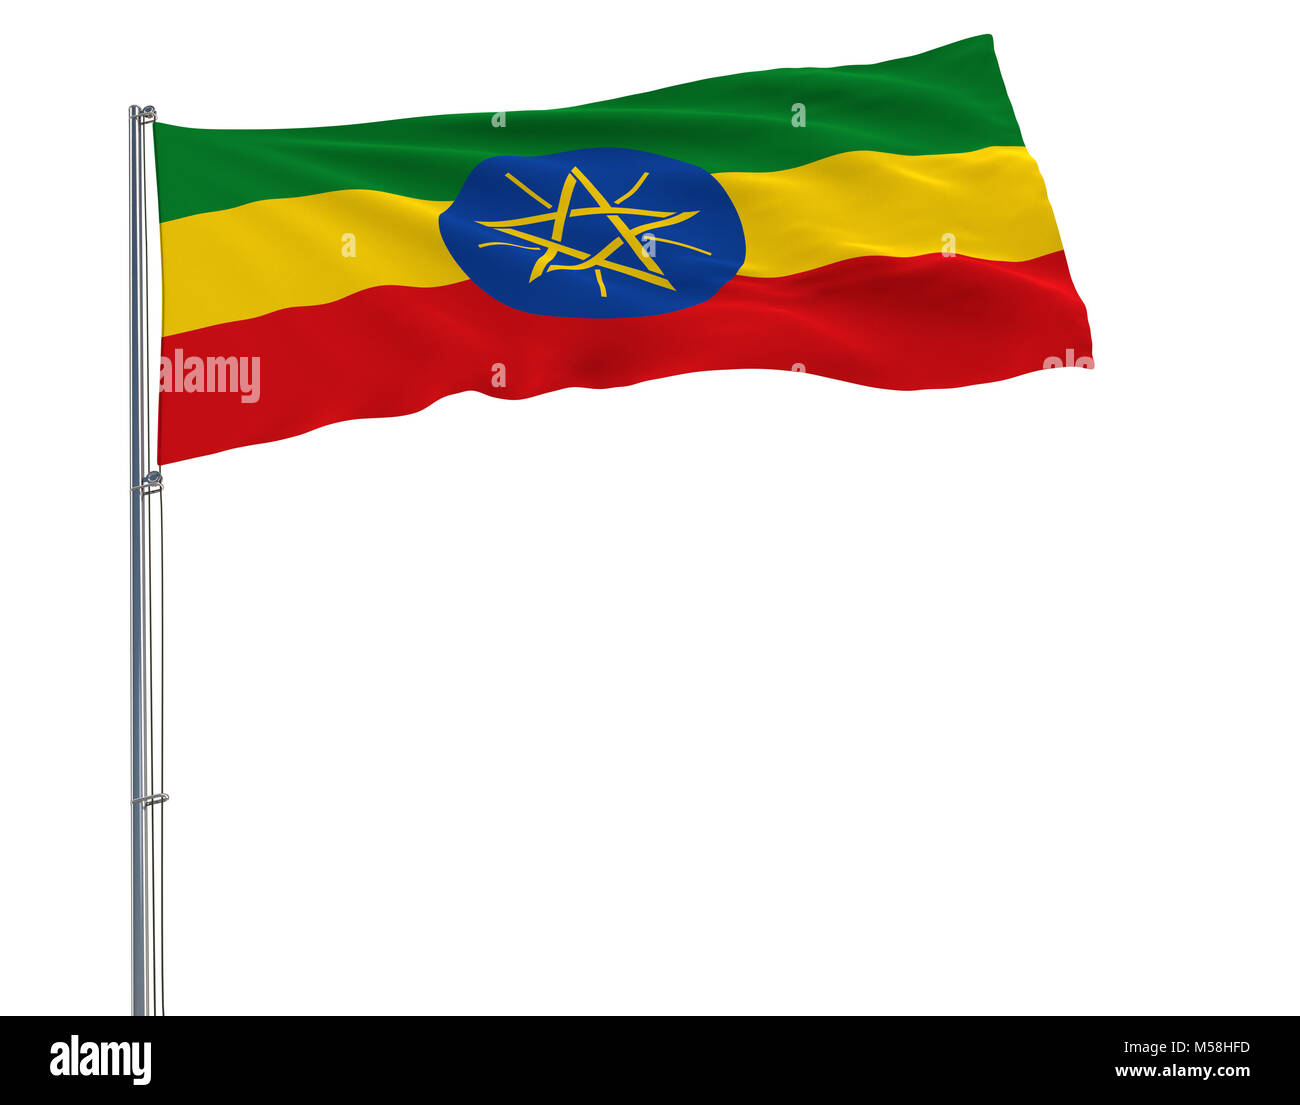 Flagge Äthiopien auf dem Fahnenmast im Wind flattern auf einem weißen Hintergrund, 3D-Rendering Stockfoto